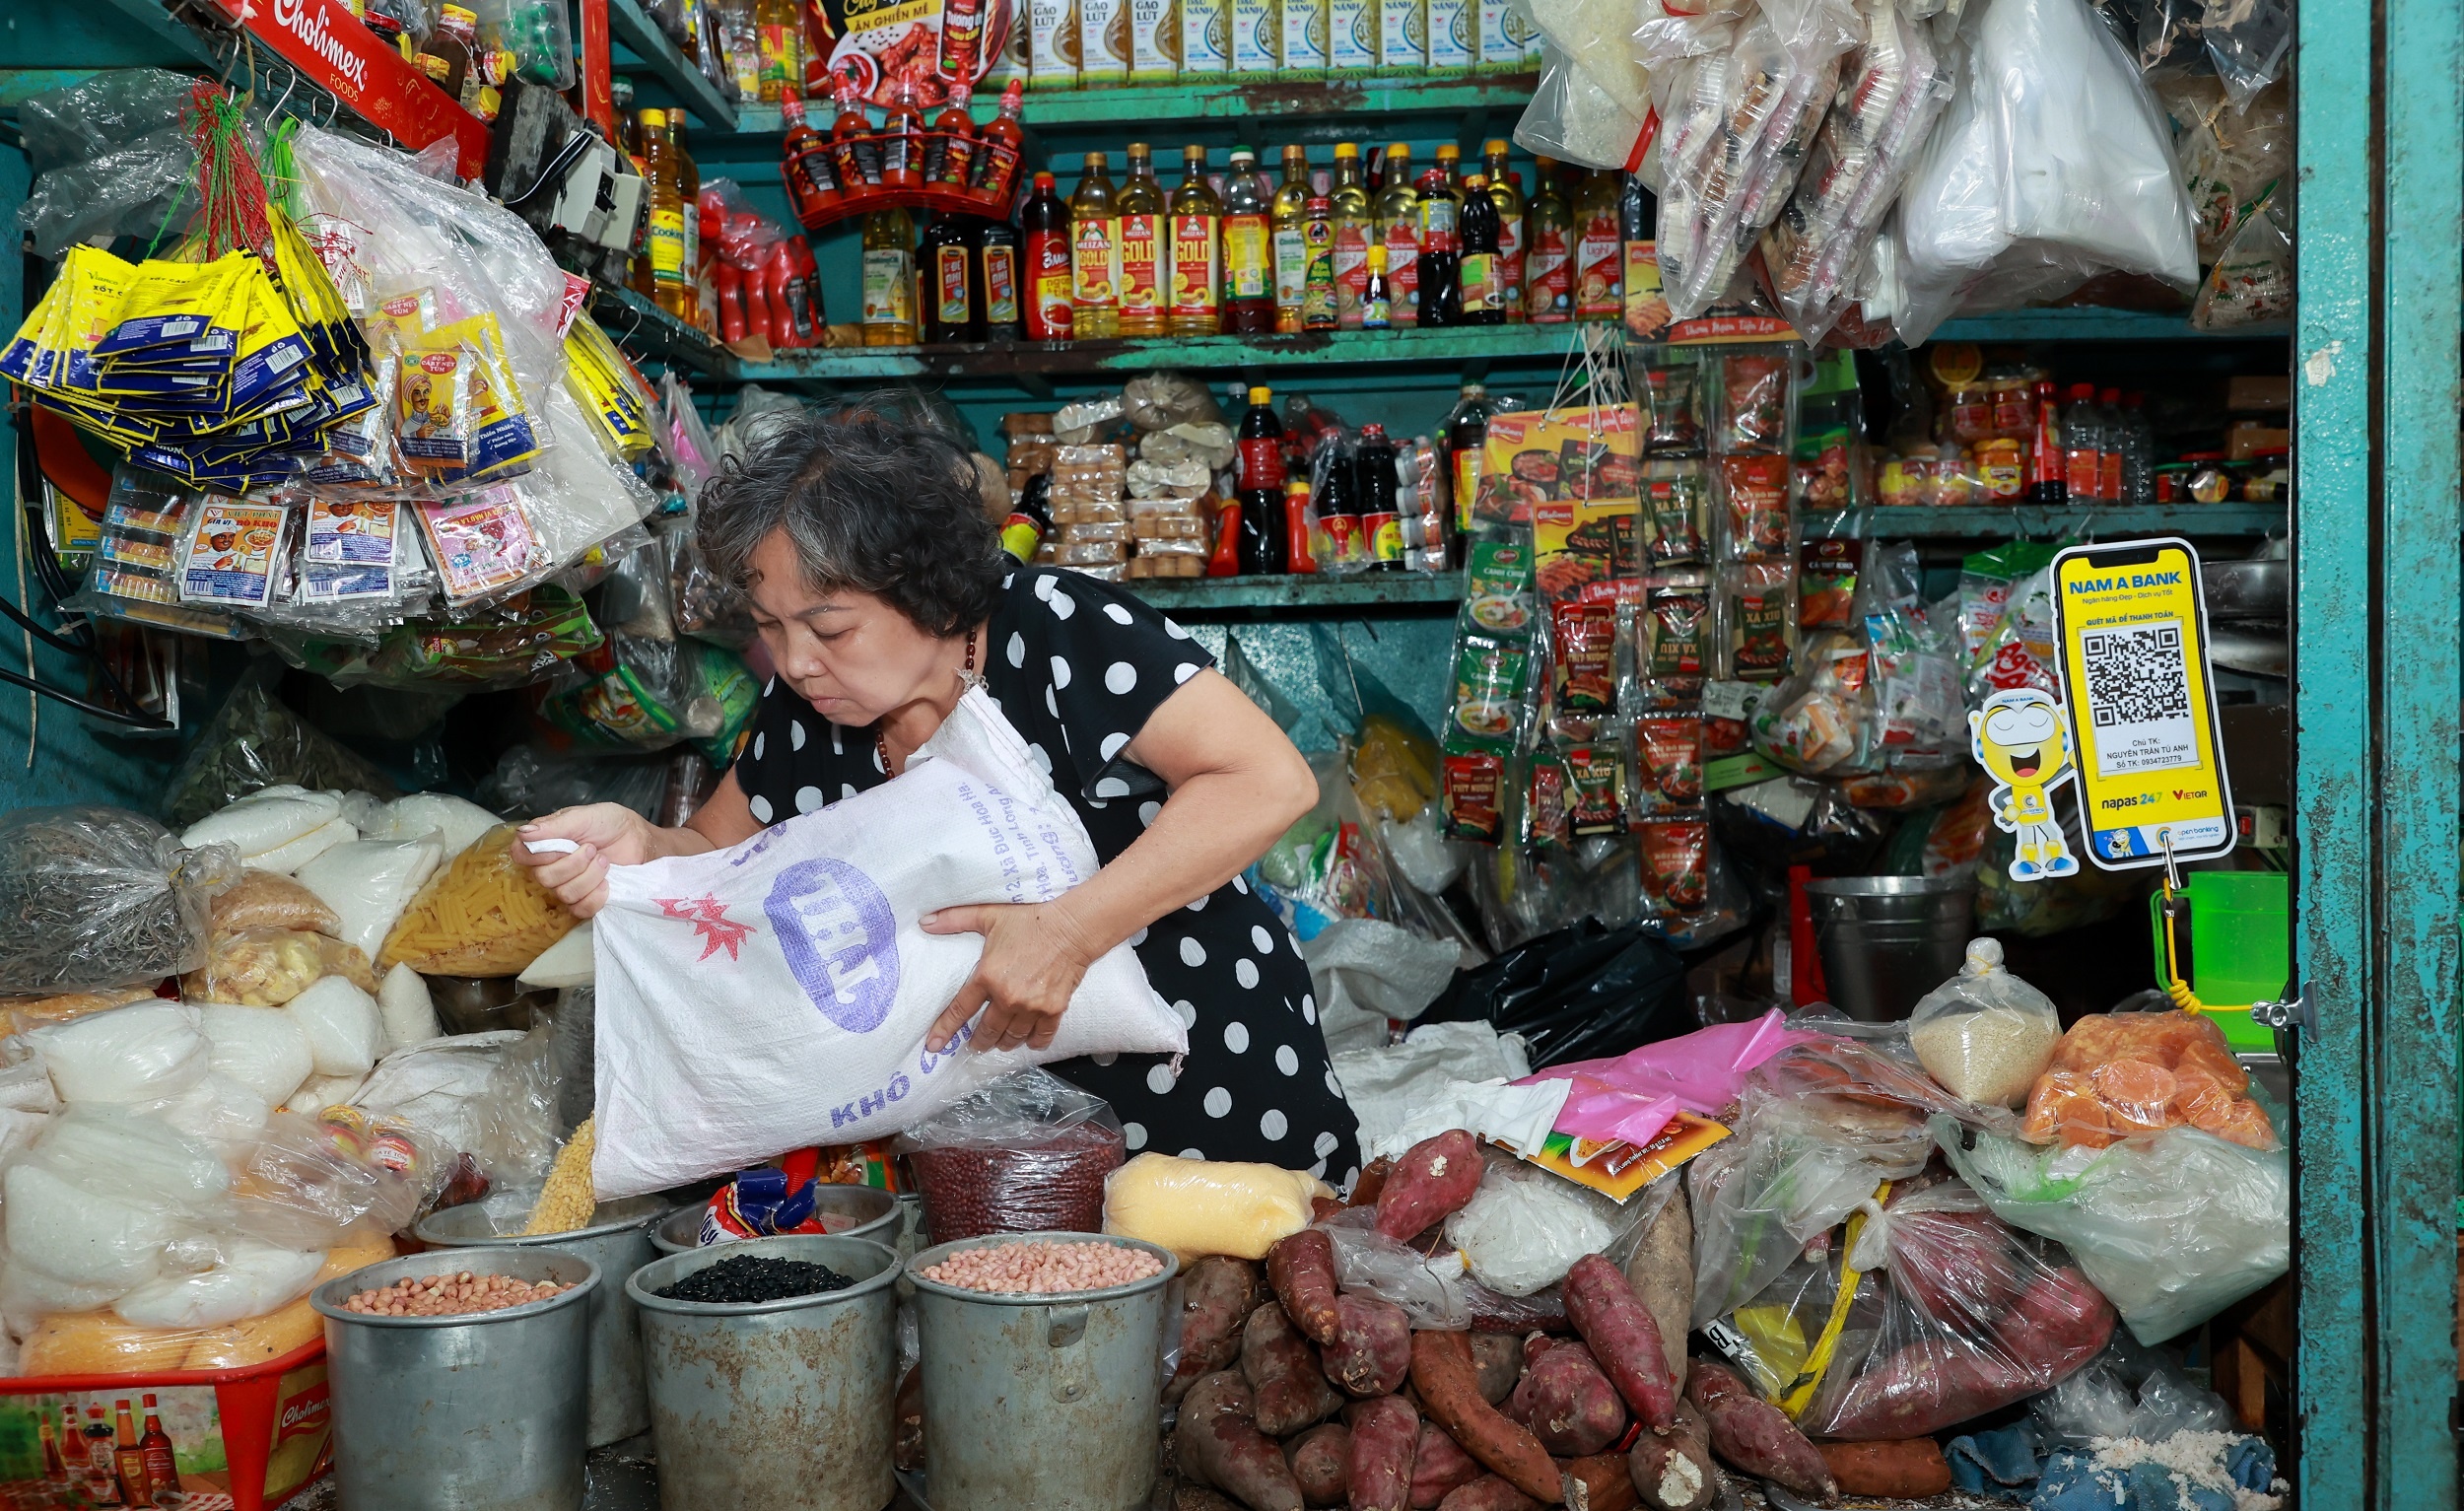 Quầy hàng đồ khô tại chợ Tân Định – TP HCM được trang bị mã QR để người mua dễ dàng thanh toán.